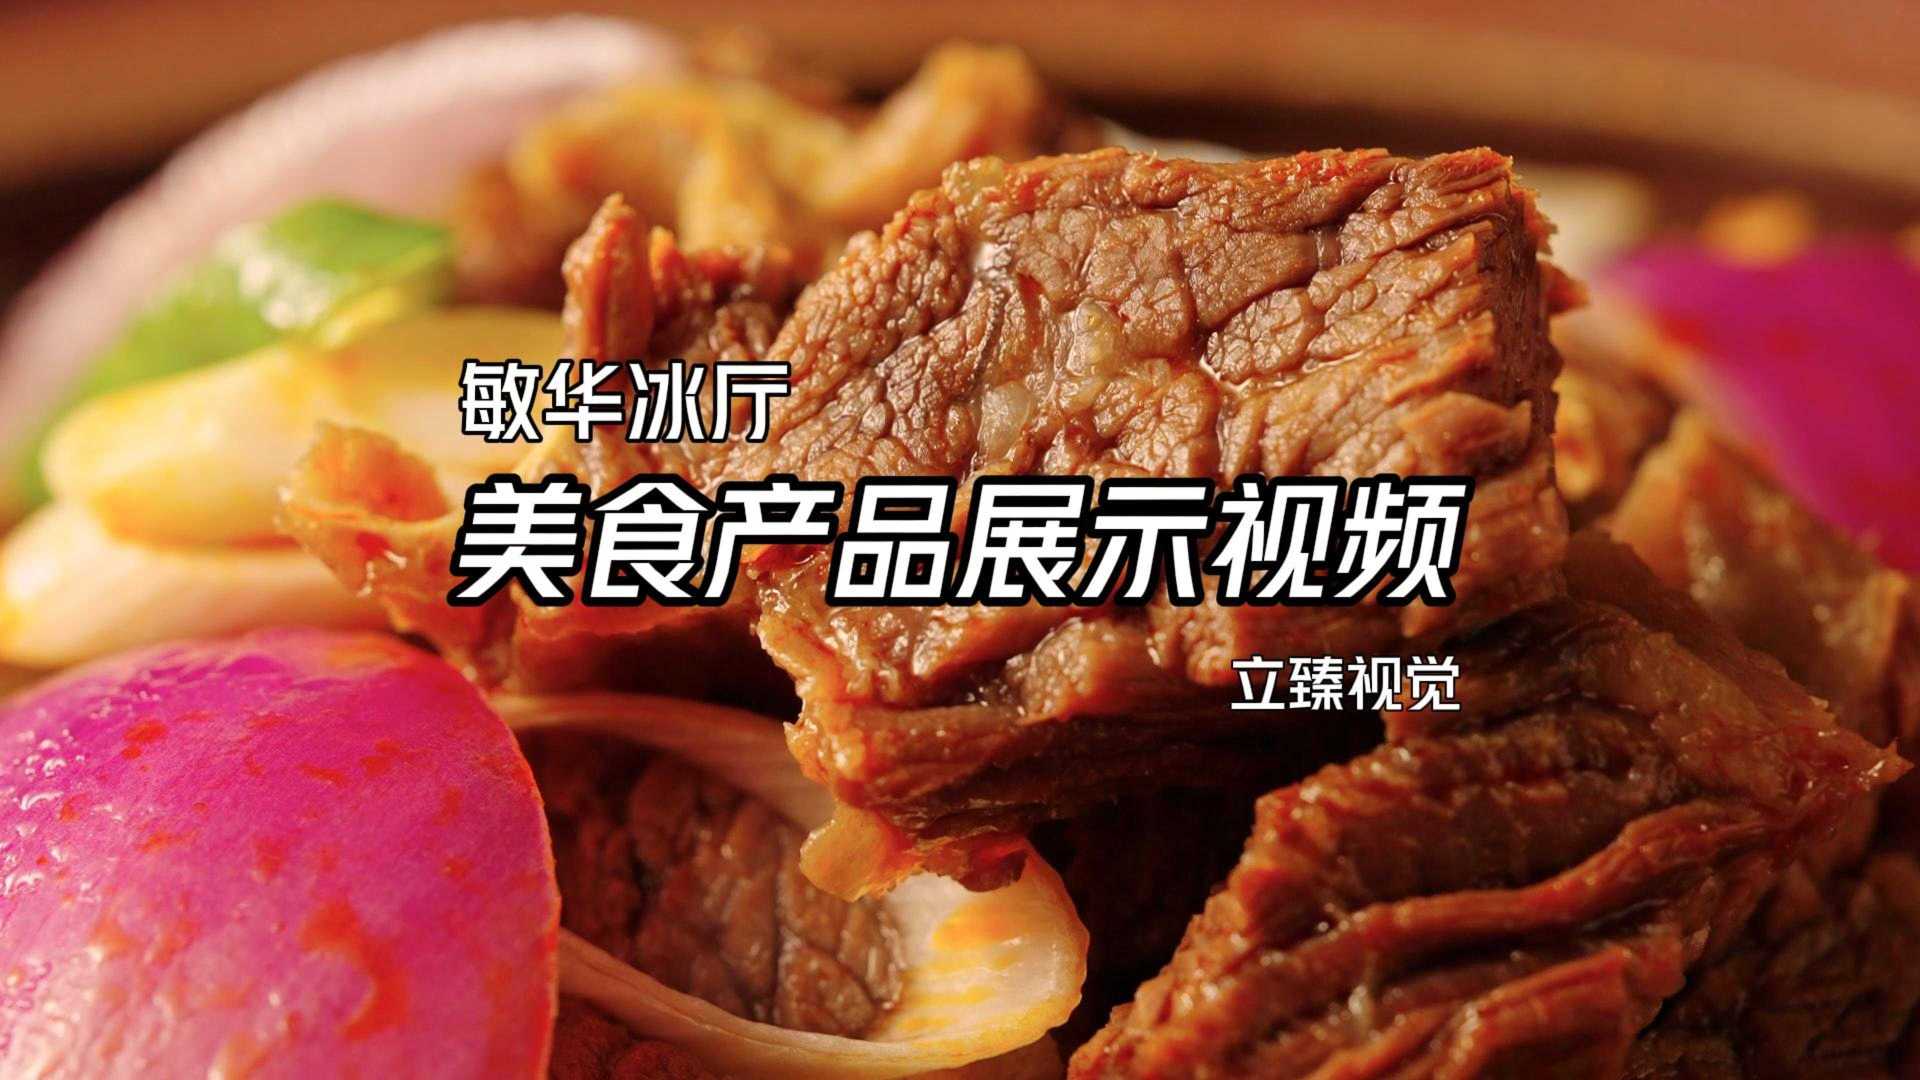 香港敏华冰厅新鲜牛腩煲宣传视频